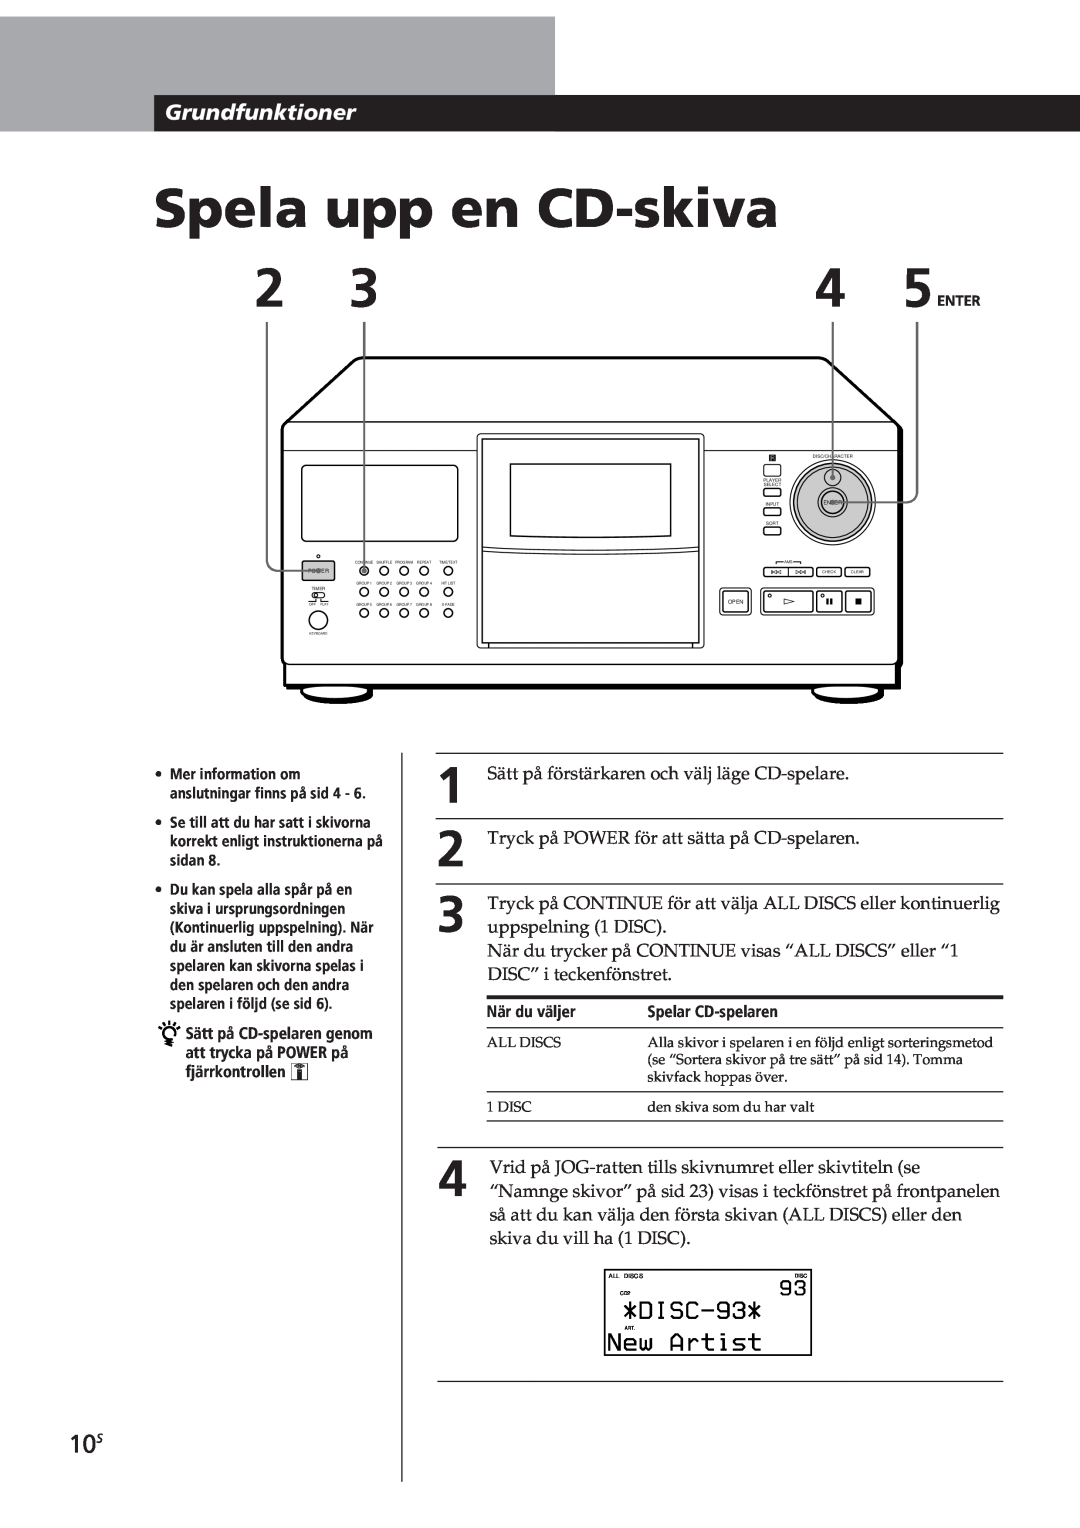 Sony CDP-CX270, CDP-CX90ES manual Spela upp en CD-skiva, DISC-93, New Artist, Grundfunktioner 